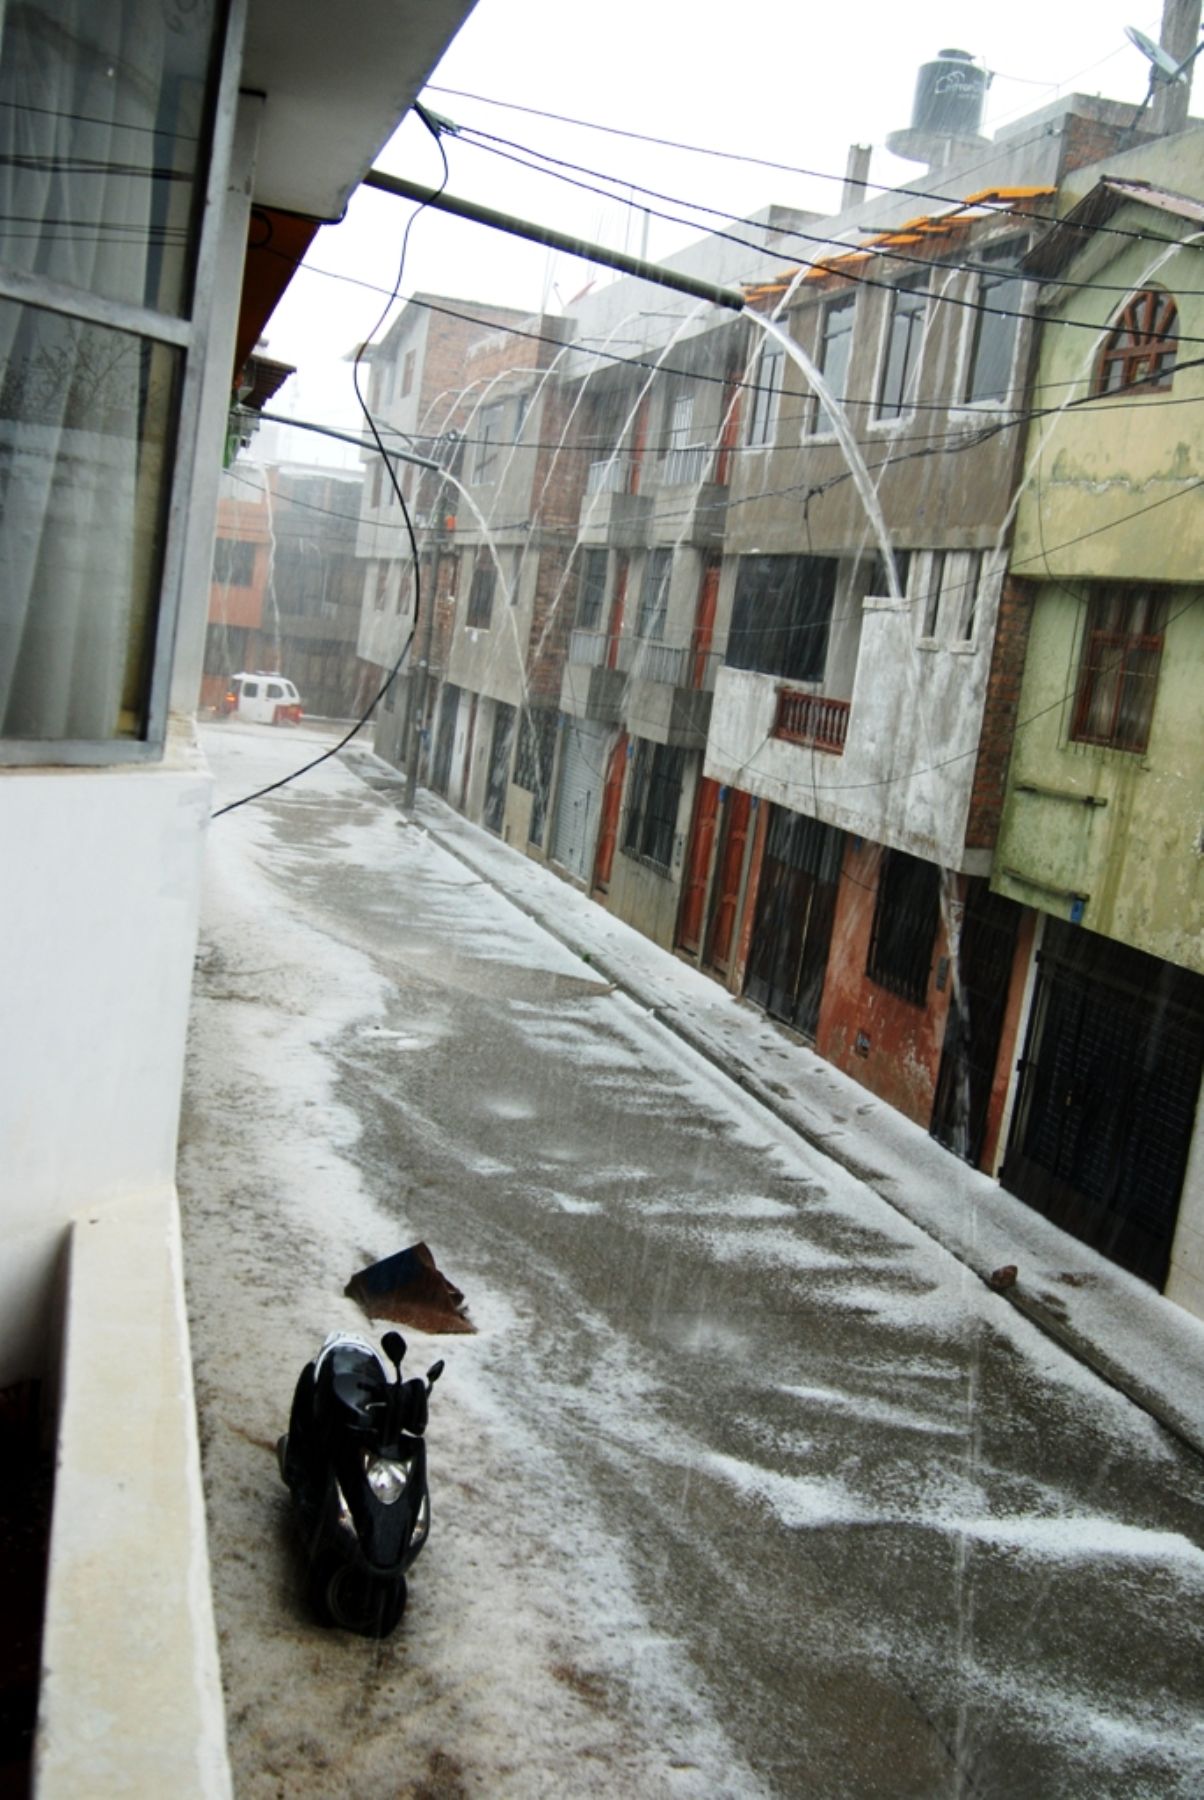 Lluvia torrencial inunda viviendas y calles de Cajabamba, en Cajamarca. Foto: ANDINA/archivo